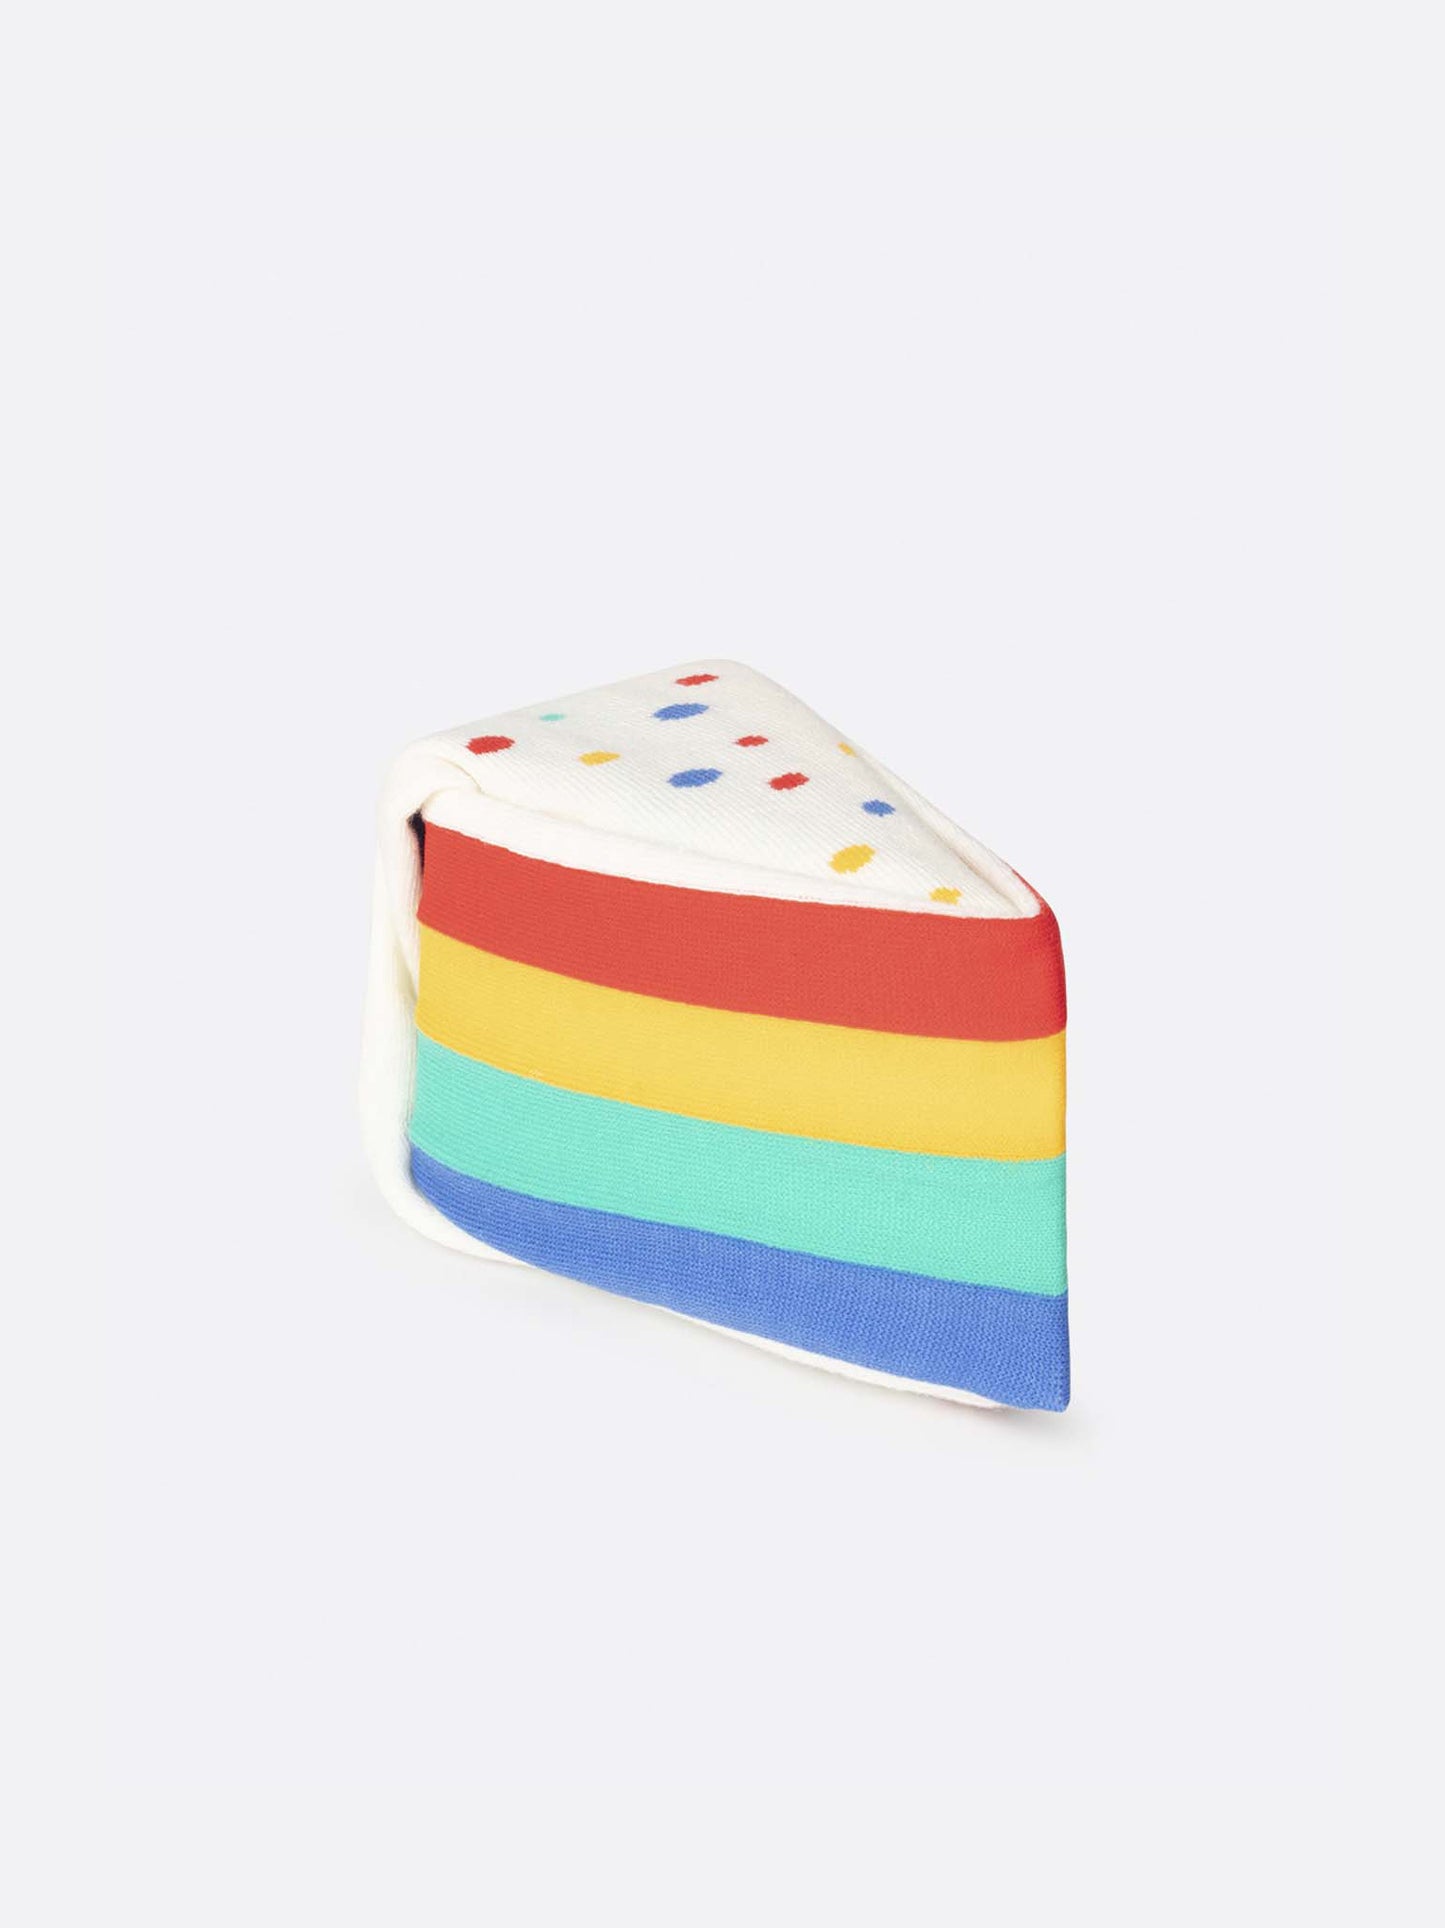 Eat My Socks: Rainbow Cake